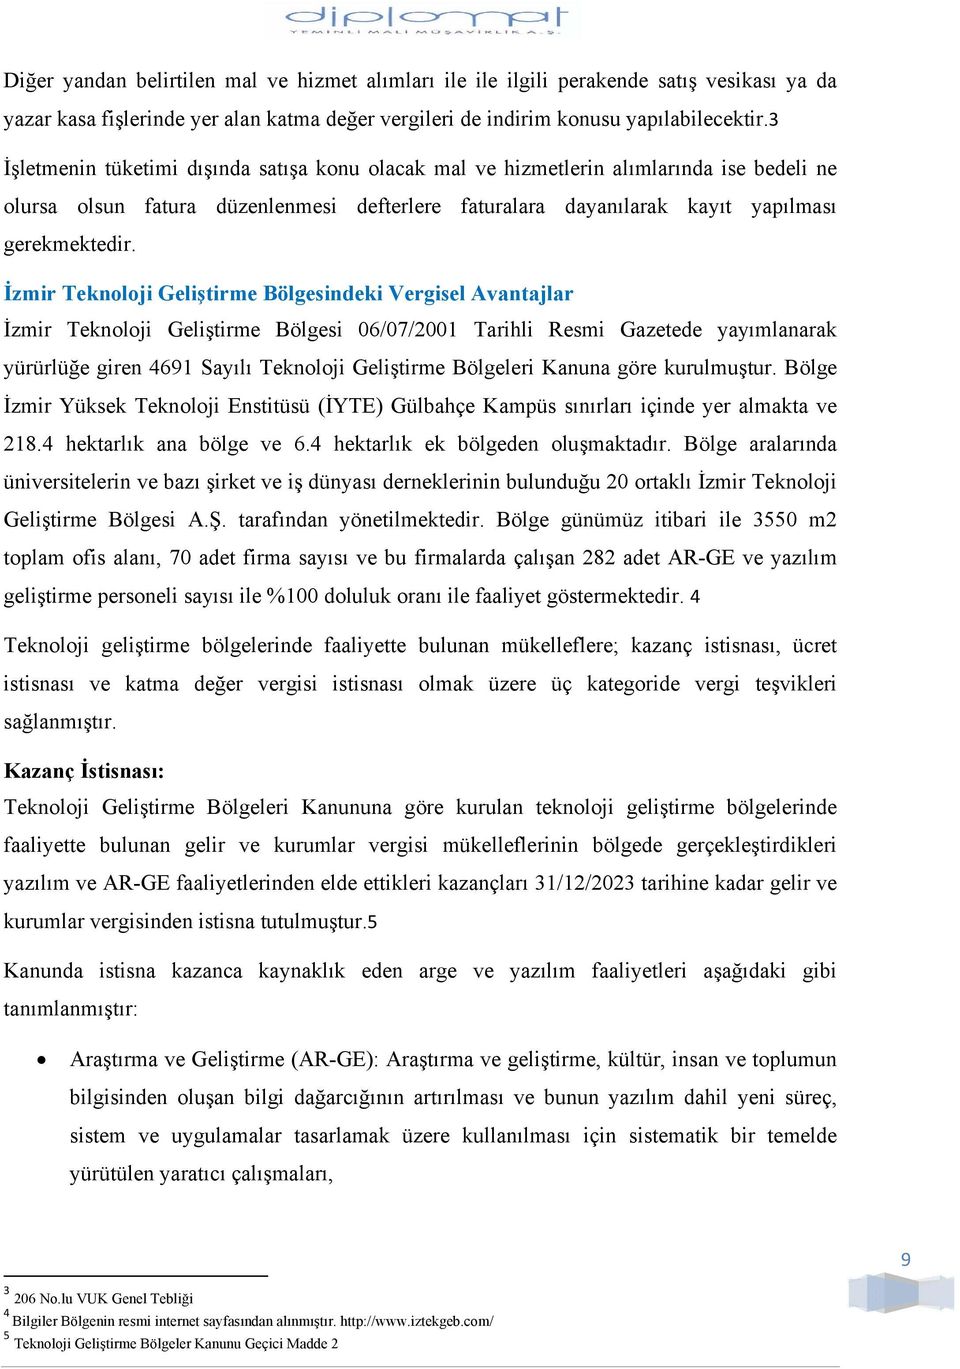 İzmir Teknoloji Geliştirme Bölgesindeki Vergisel Avantajlar İzmir Teknoloji Geliştirme Bölgesi 06/07/2001 Tarihli Resmi Gazetede yayımlanarak yürürlüğe giren 4691 Sayılı Teknoloji Geliştirme